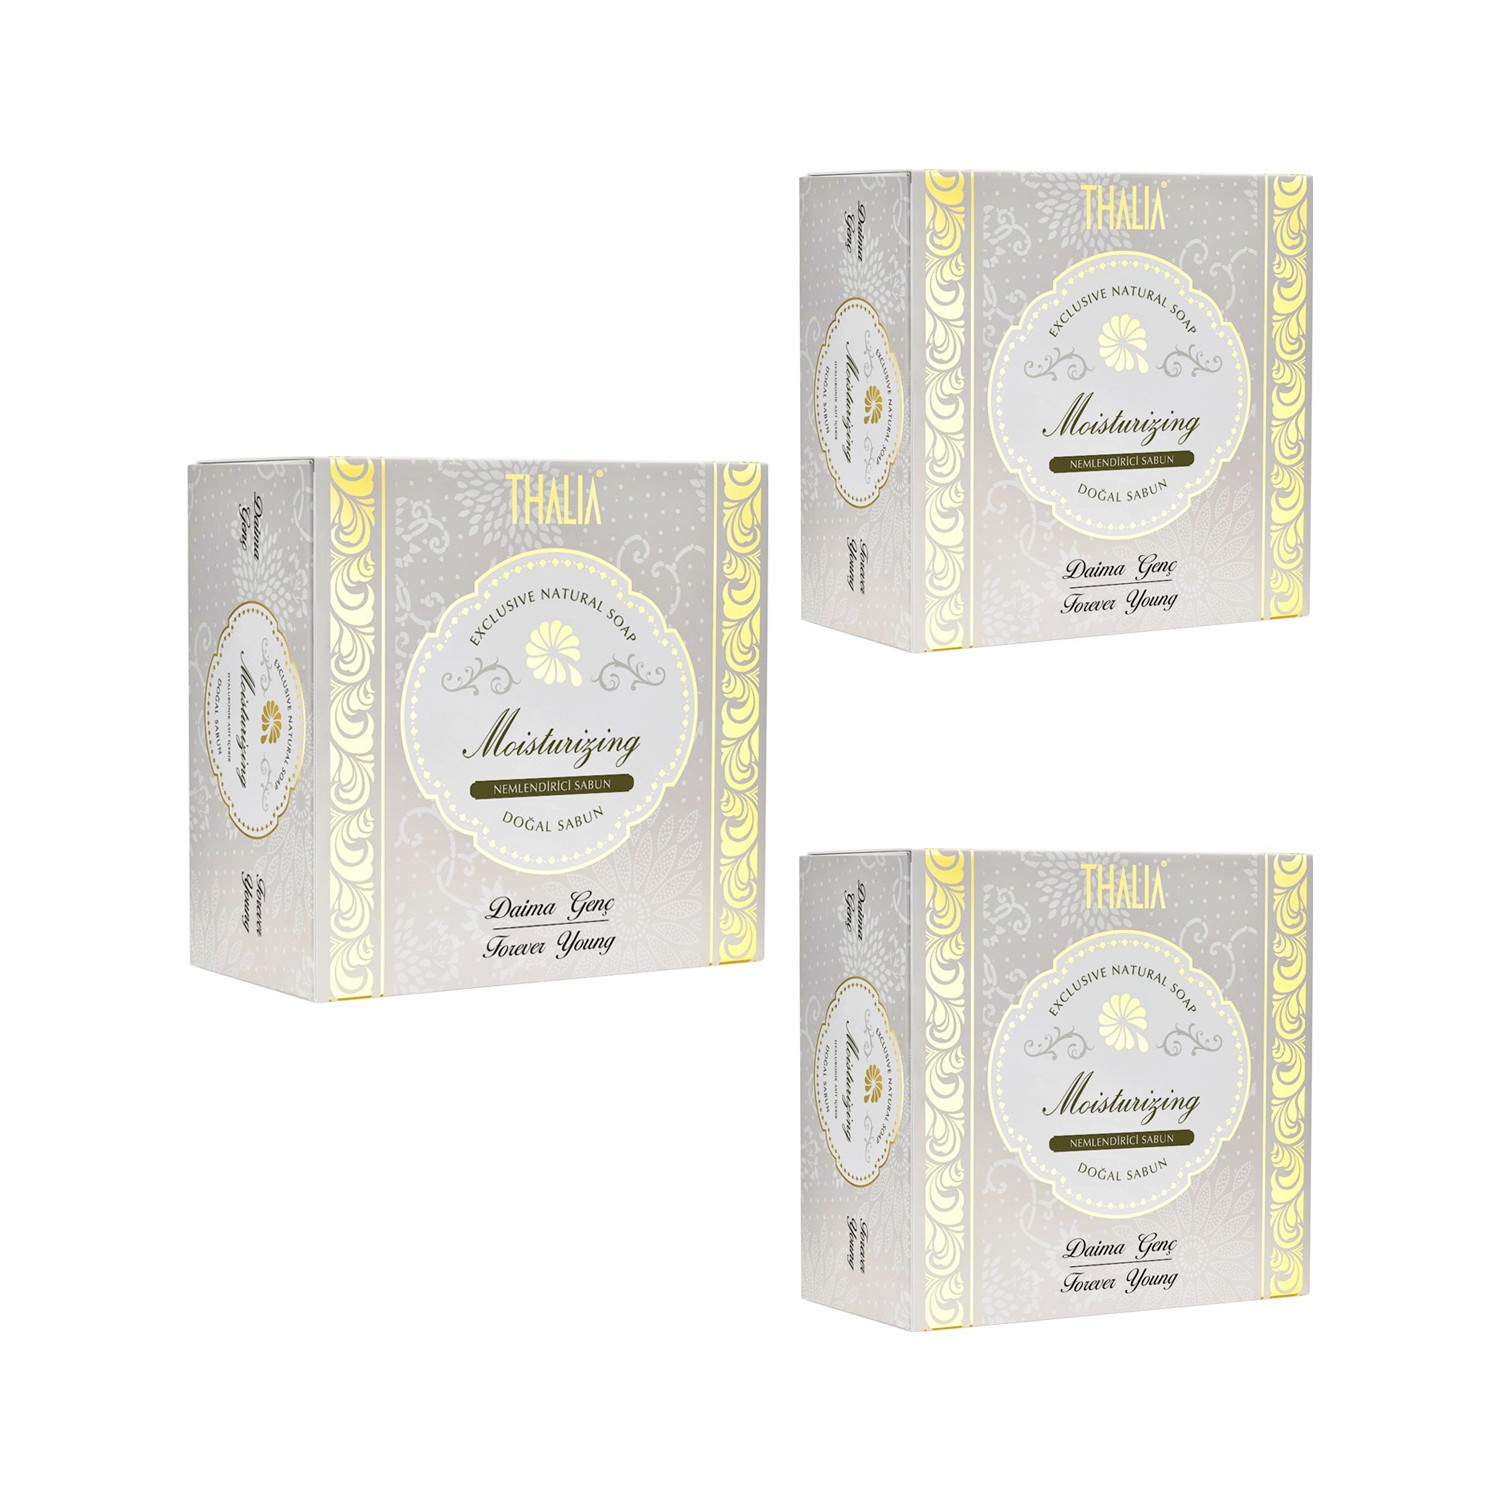 Натуральное увлажняющее мыло Thalia, 3 x 150 г антивозрастное мыло с ароматом сакуры thalia natural beauty age defense sakura soap